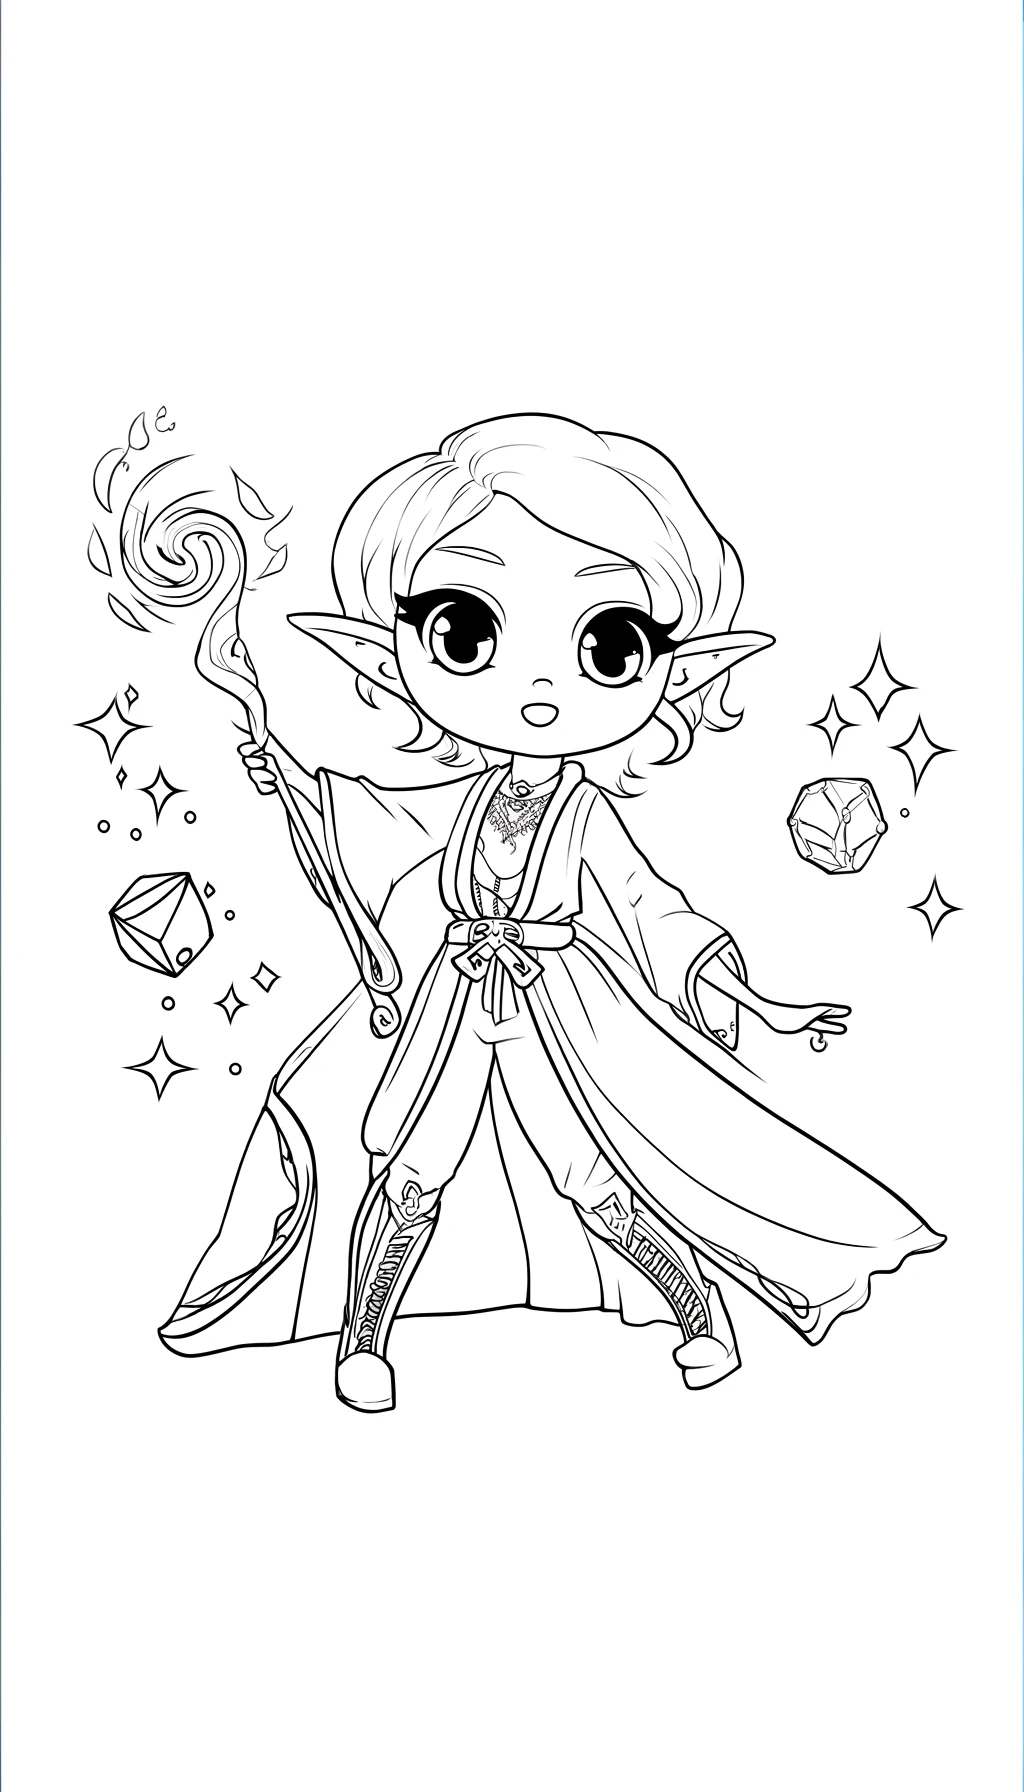 An elf sorcerer with a wand